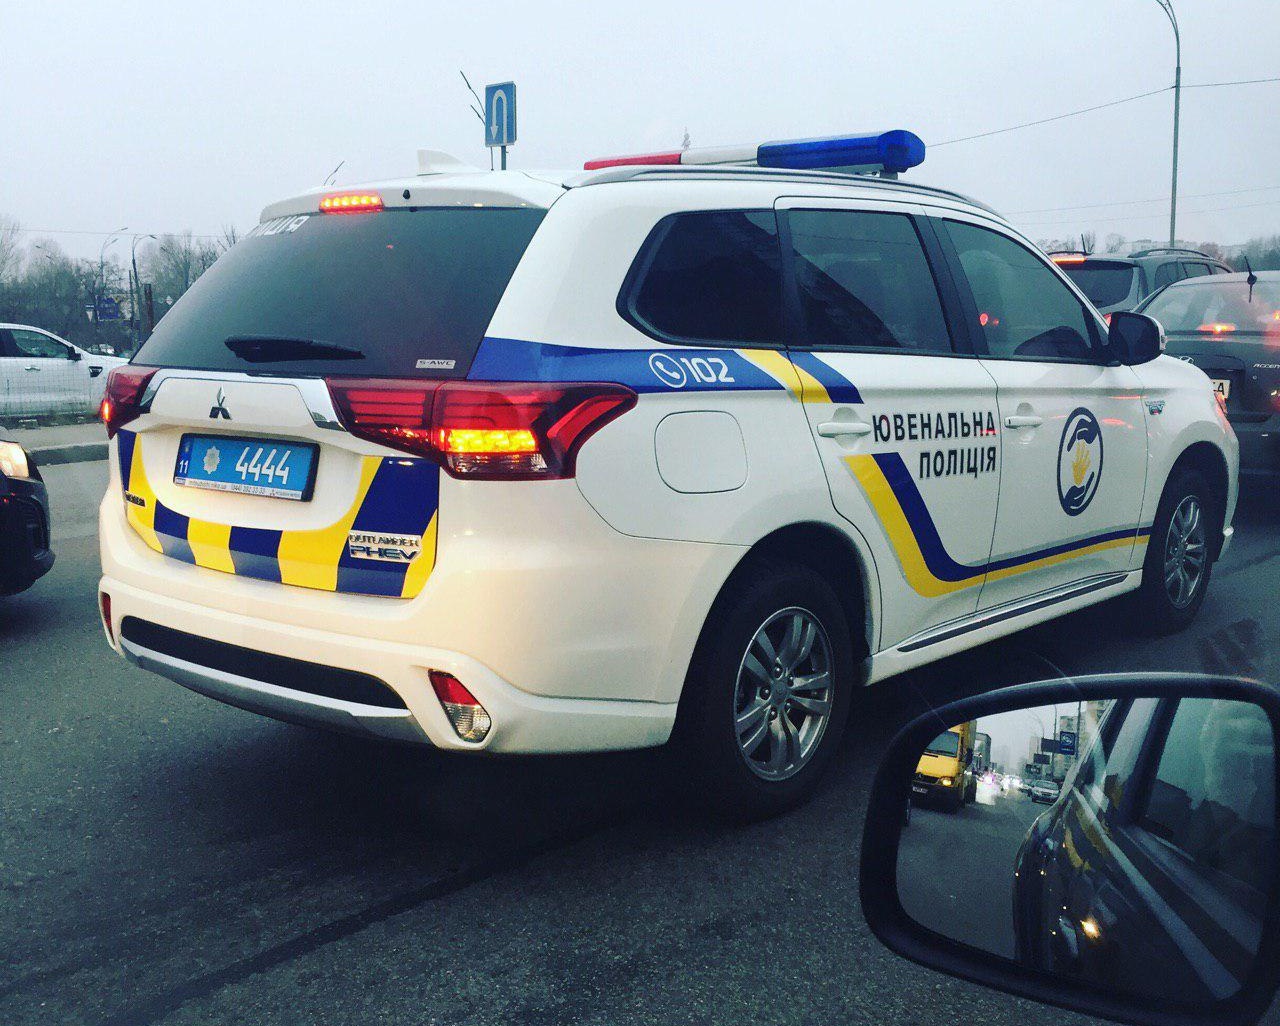 Новость одной картинкой: авто ювенальной полиции с крутым номером